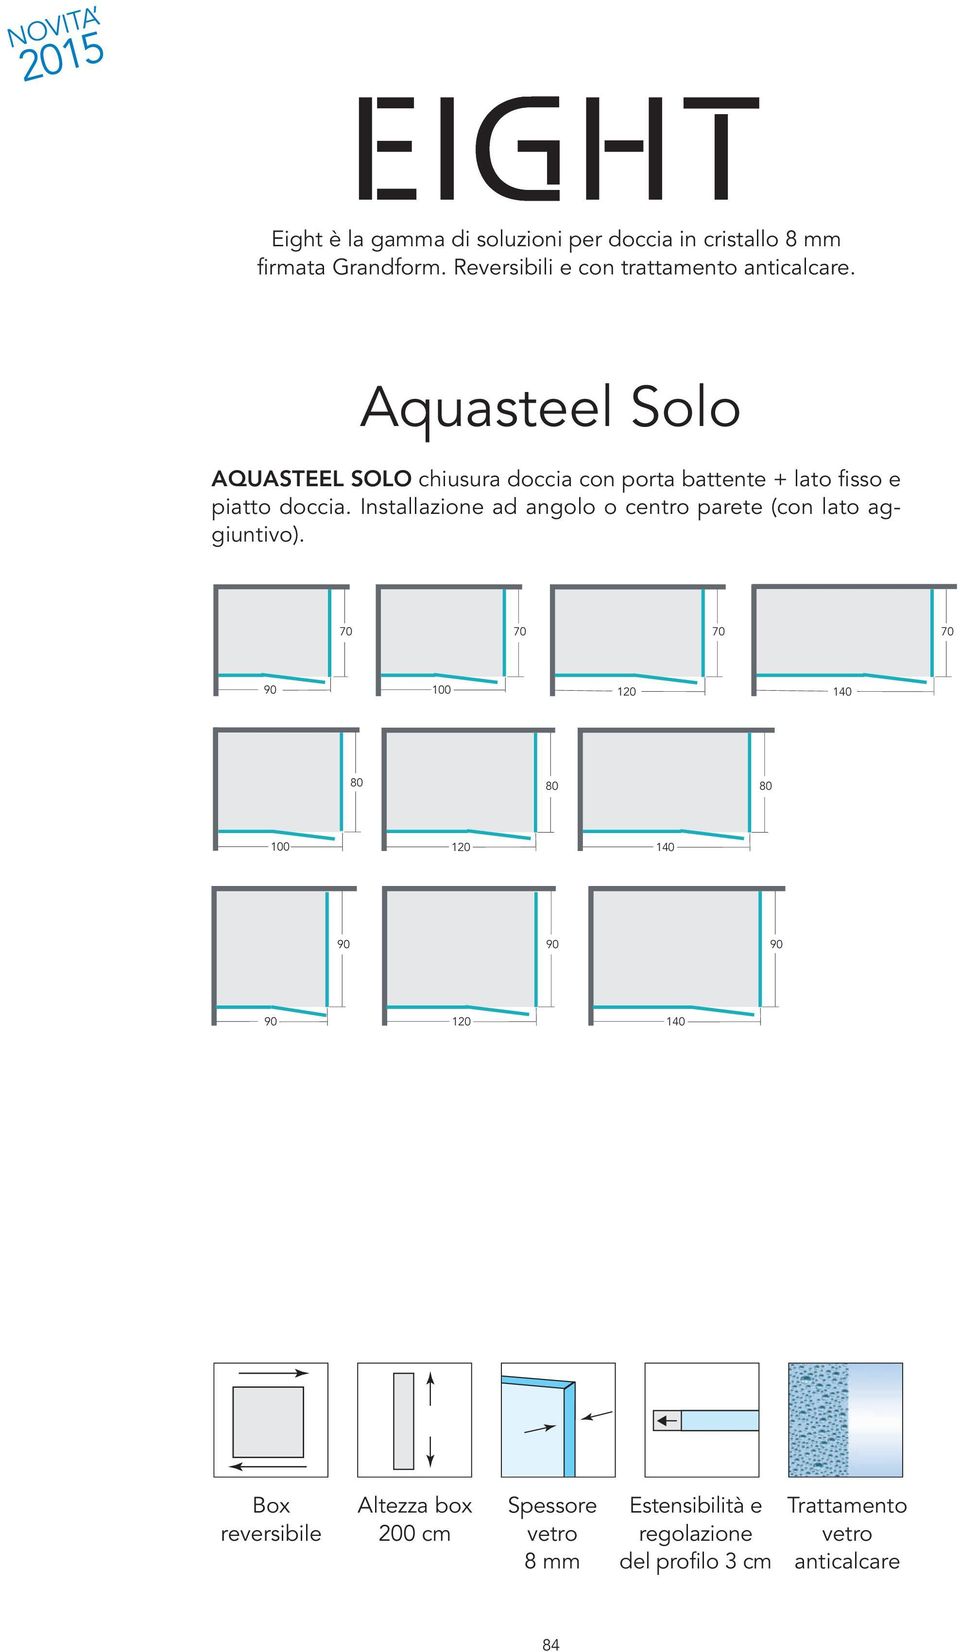 Aquasteel Solo AQUASTEEL SOLO chiusura doccia con porta battente + lato fisso e piatto doccia.